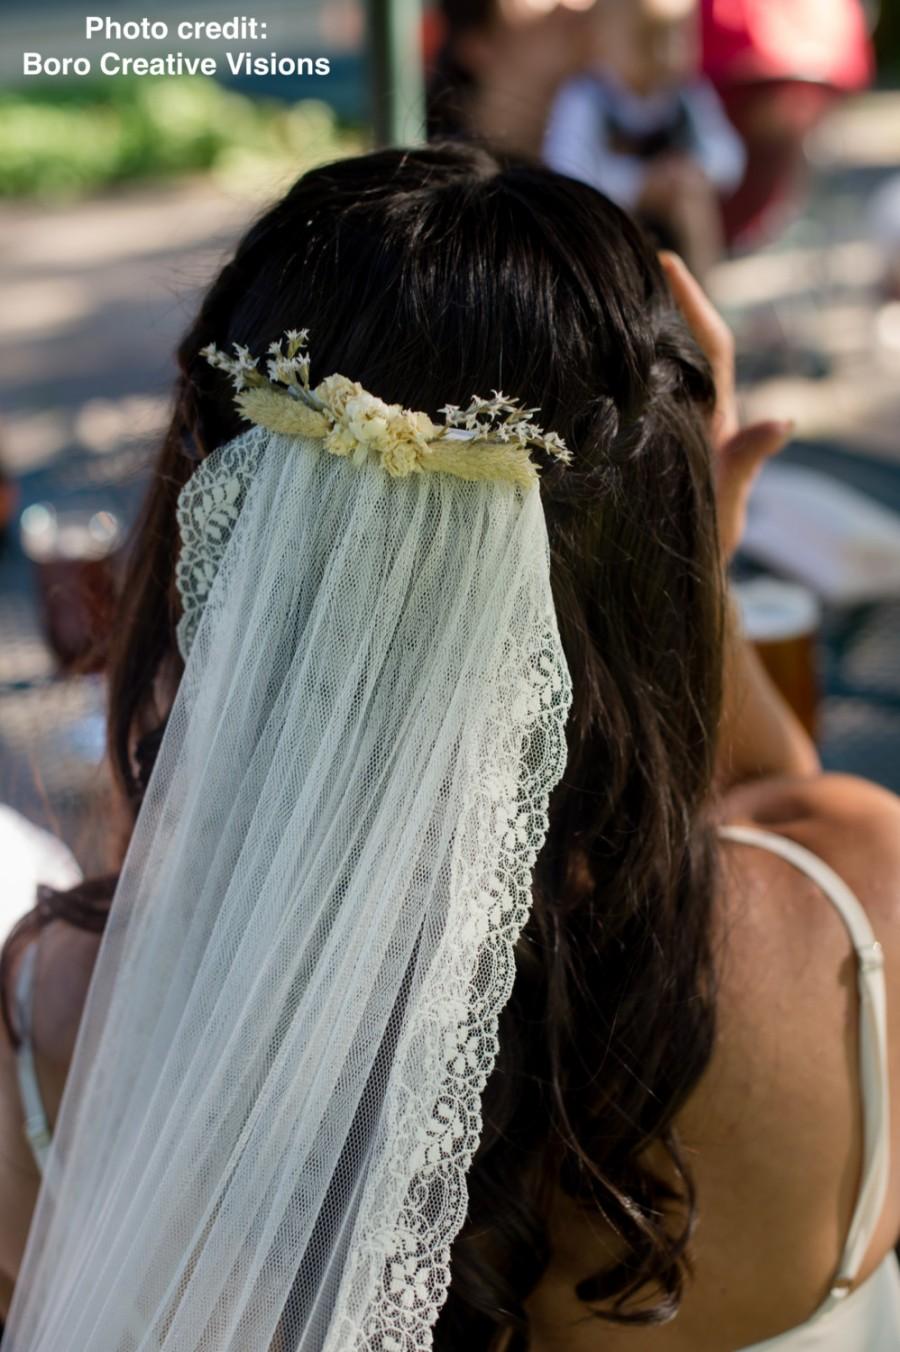 زفاف - Boho wedding veil - Bohemian wedding veil with white and ivory dried flowers - white or ivory tulle with lace edging - 'Sussex' veil